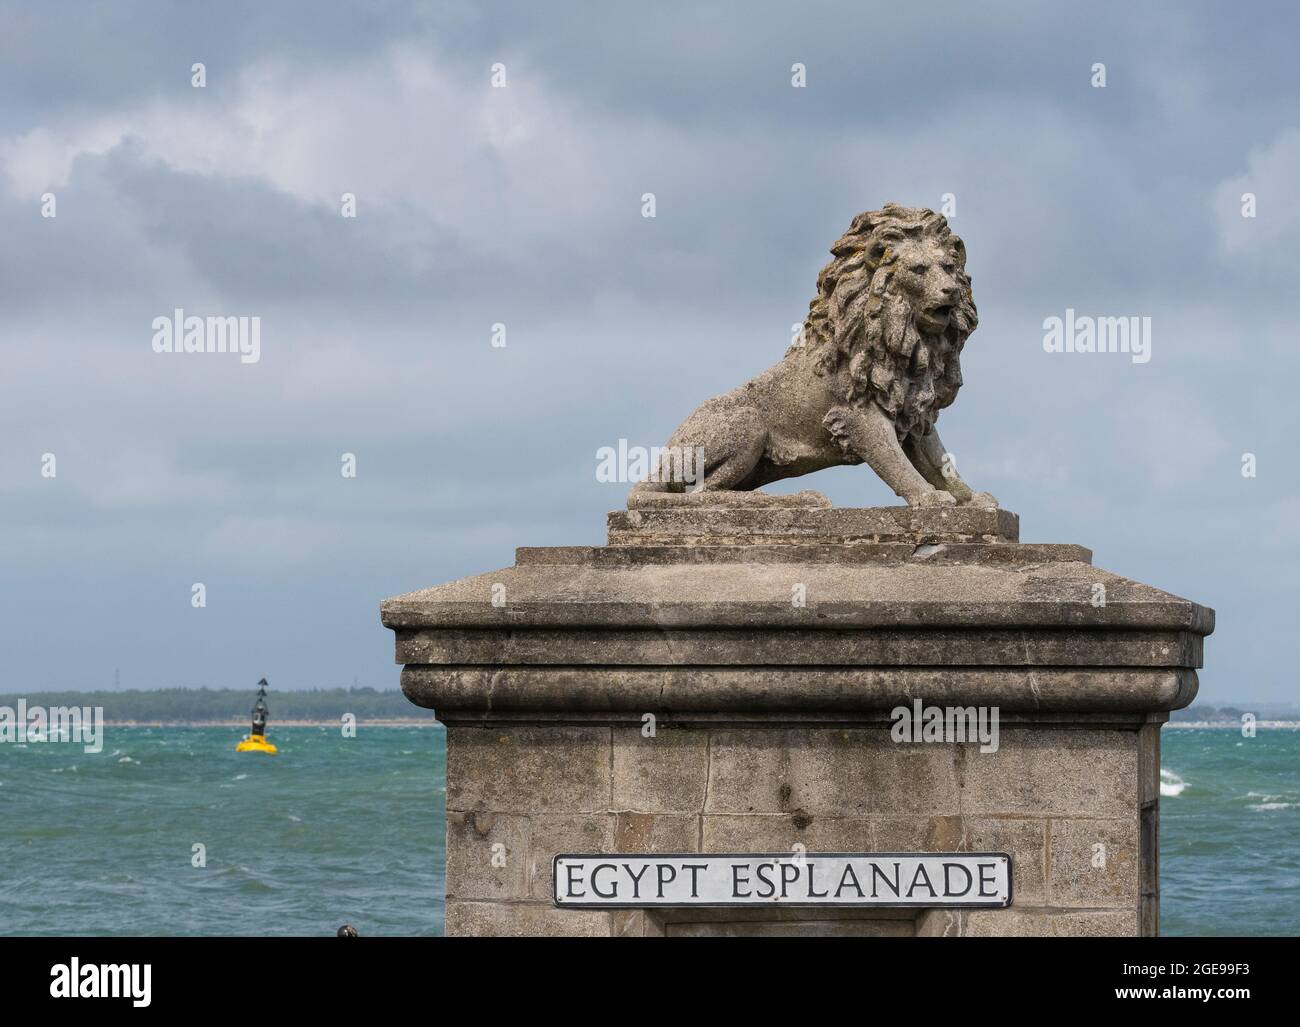 Estatua del león en la Esplanade de Egipto en la ciudad costera de Cowes, Isla de Wight, Inglaterra Foto de stock